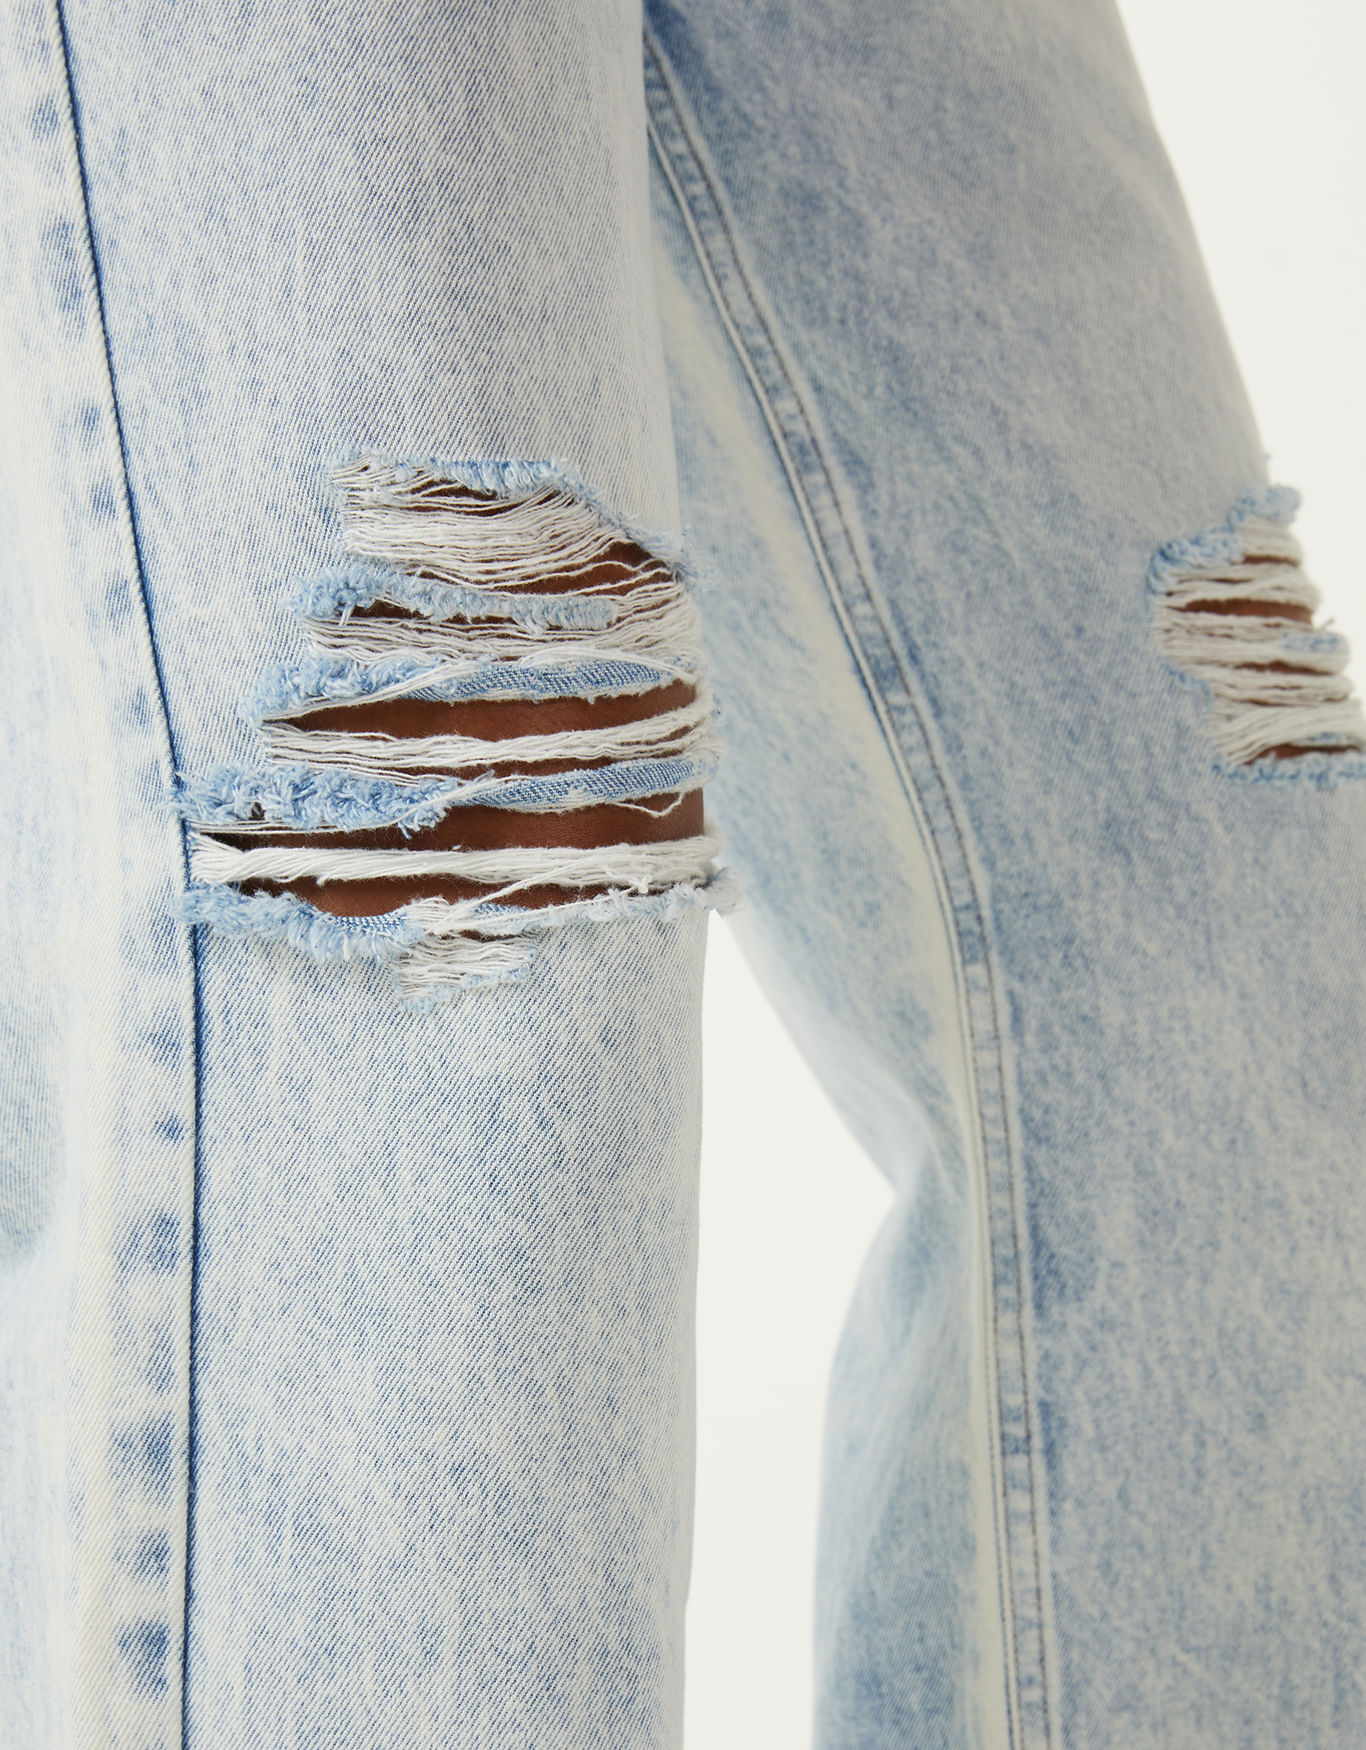 Calça jeans wide elástico inteligente - calças jeans - SHOULDER